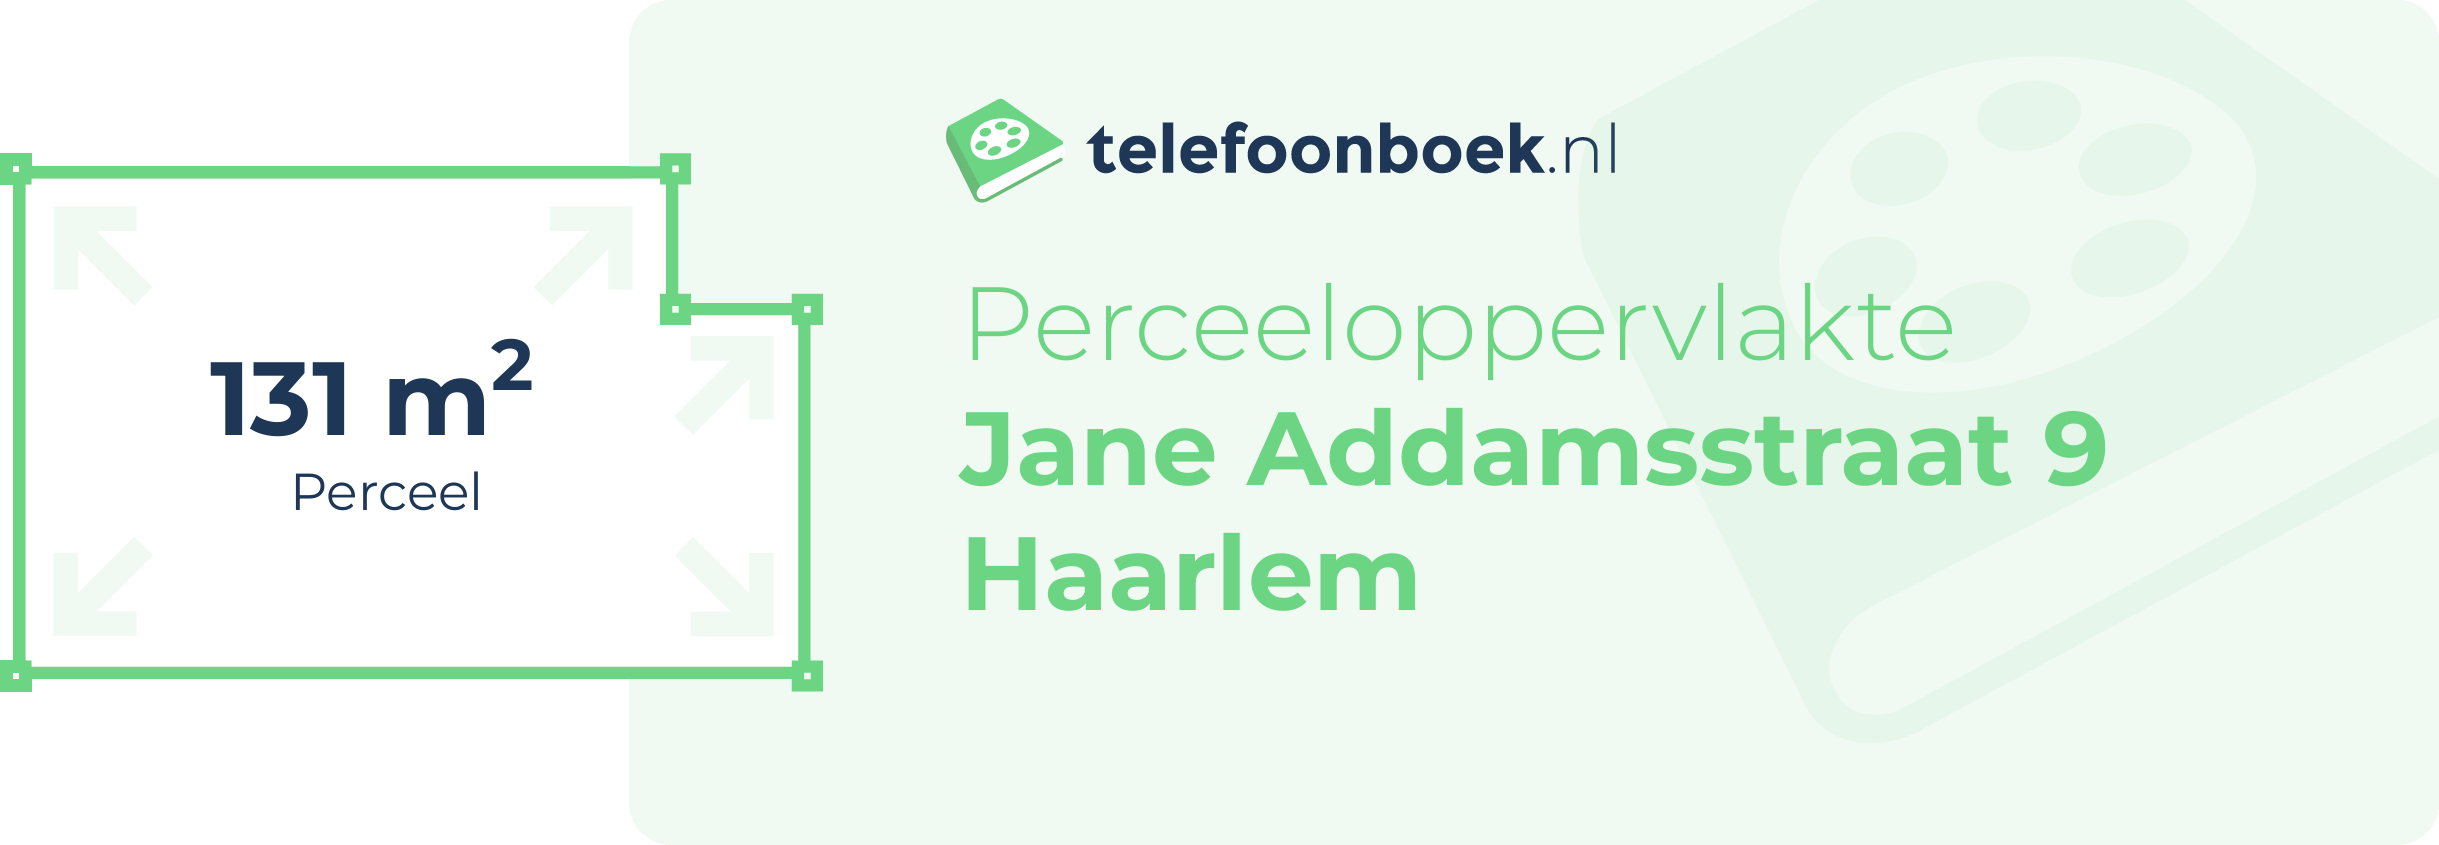 Perceeloppervlakte Jane Addamsstraat 9 Haarlem